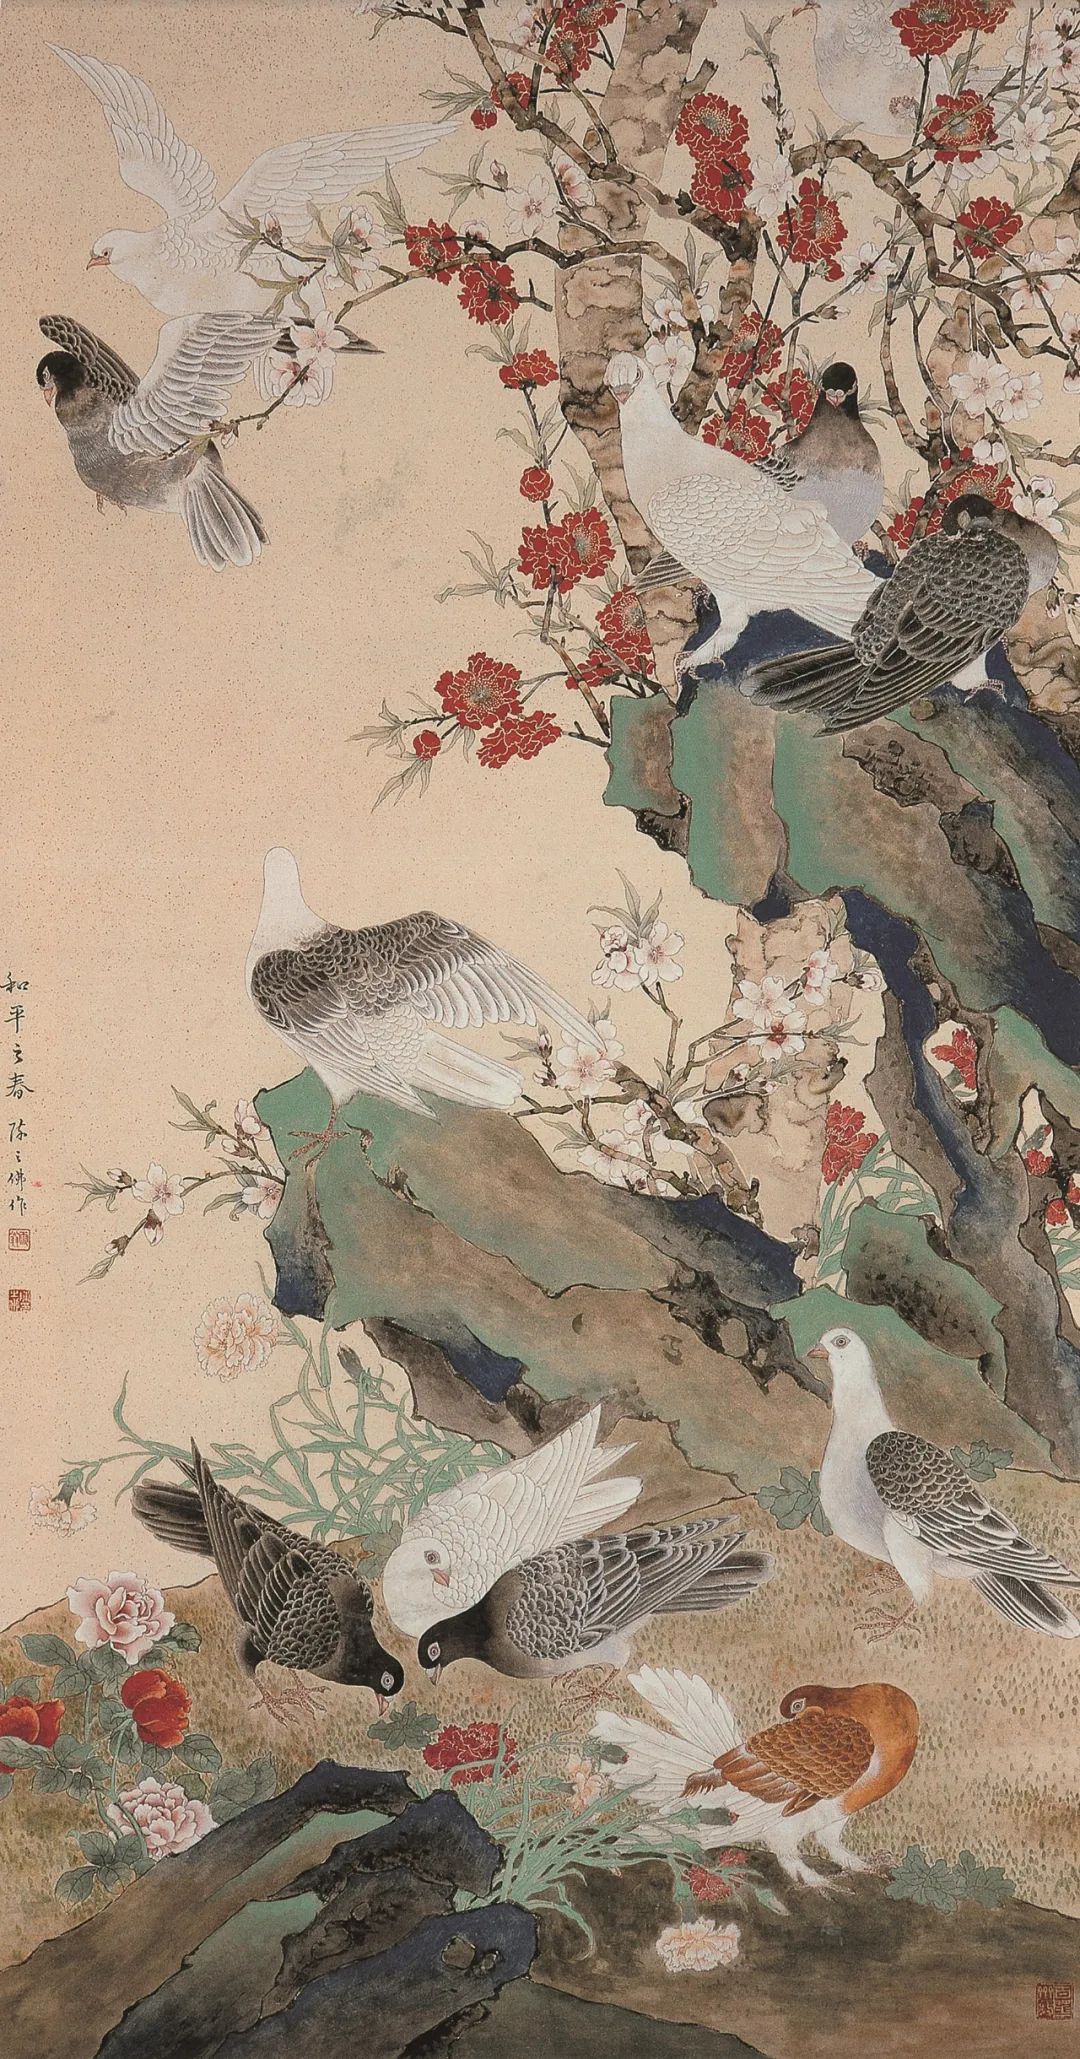 《和平之春》 陈之佛 中国画 169.3×86cm 1960年 中国美术馆藏